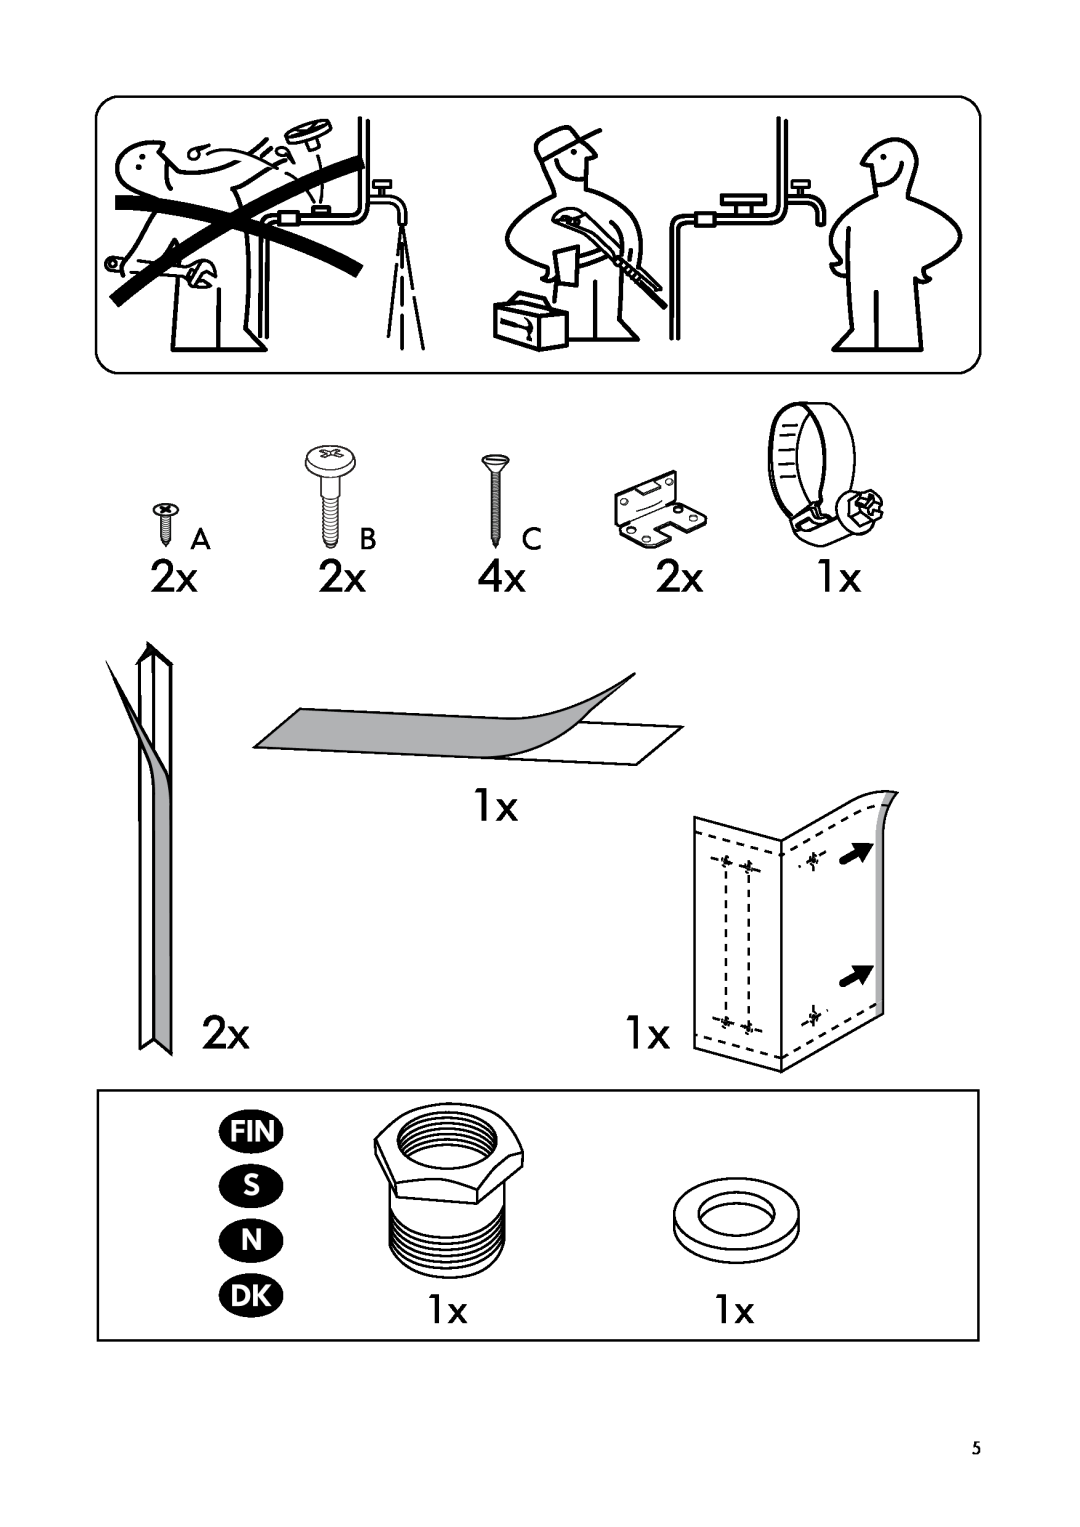 IKEA DW45 manual 2xA B 4xC, Fin S N 